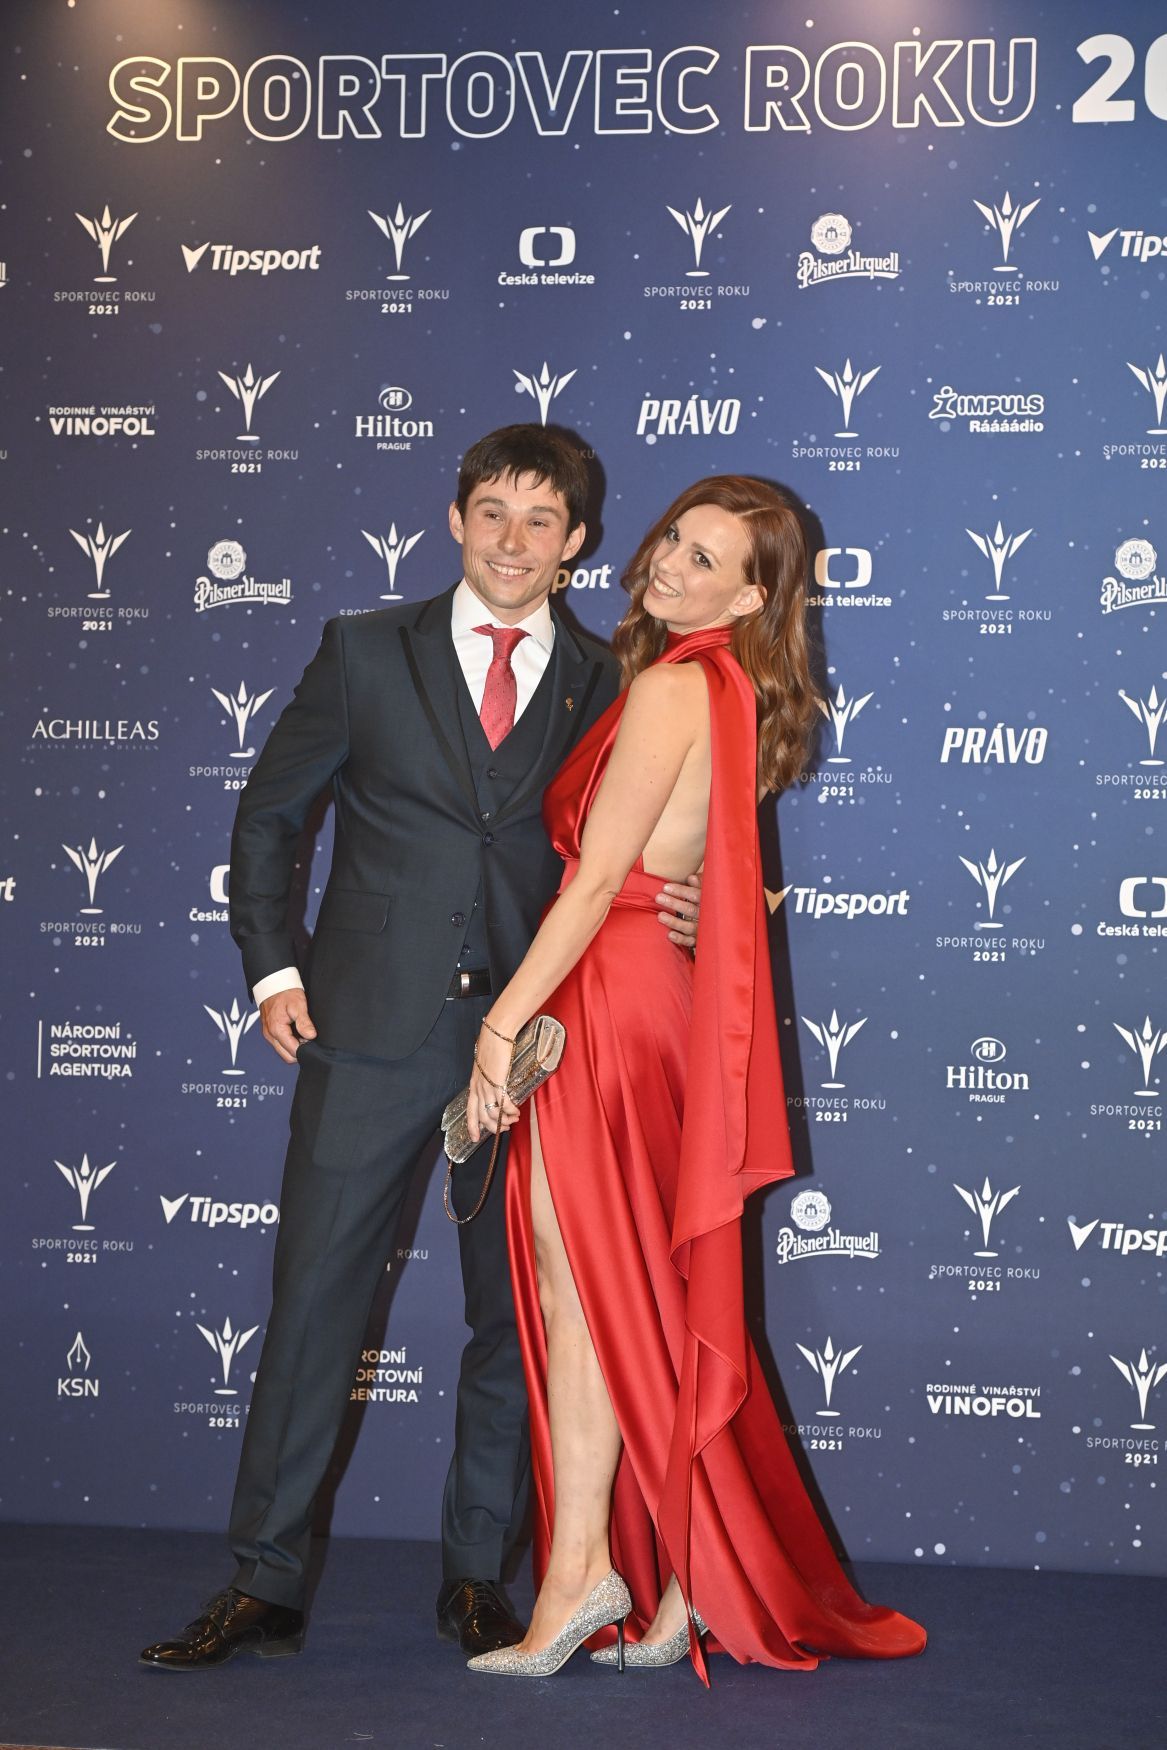 Vodní slalomář Jiří Prskavec s manželkou Terezou Prskavcovou na vyhlášení ankety Sportovec roku 2021.